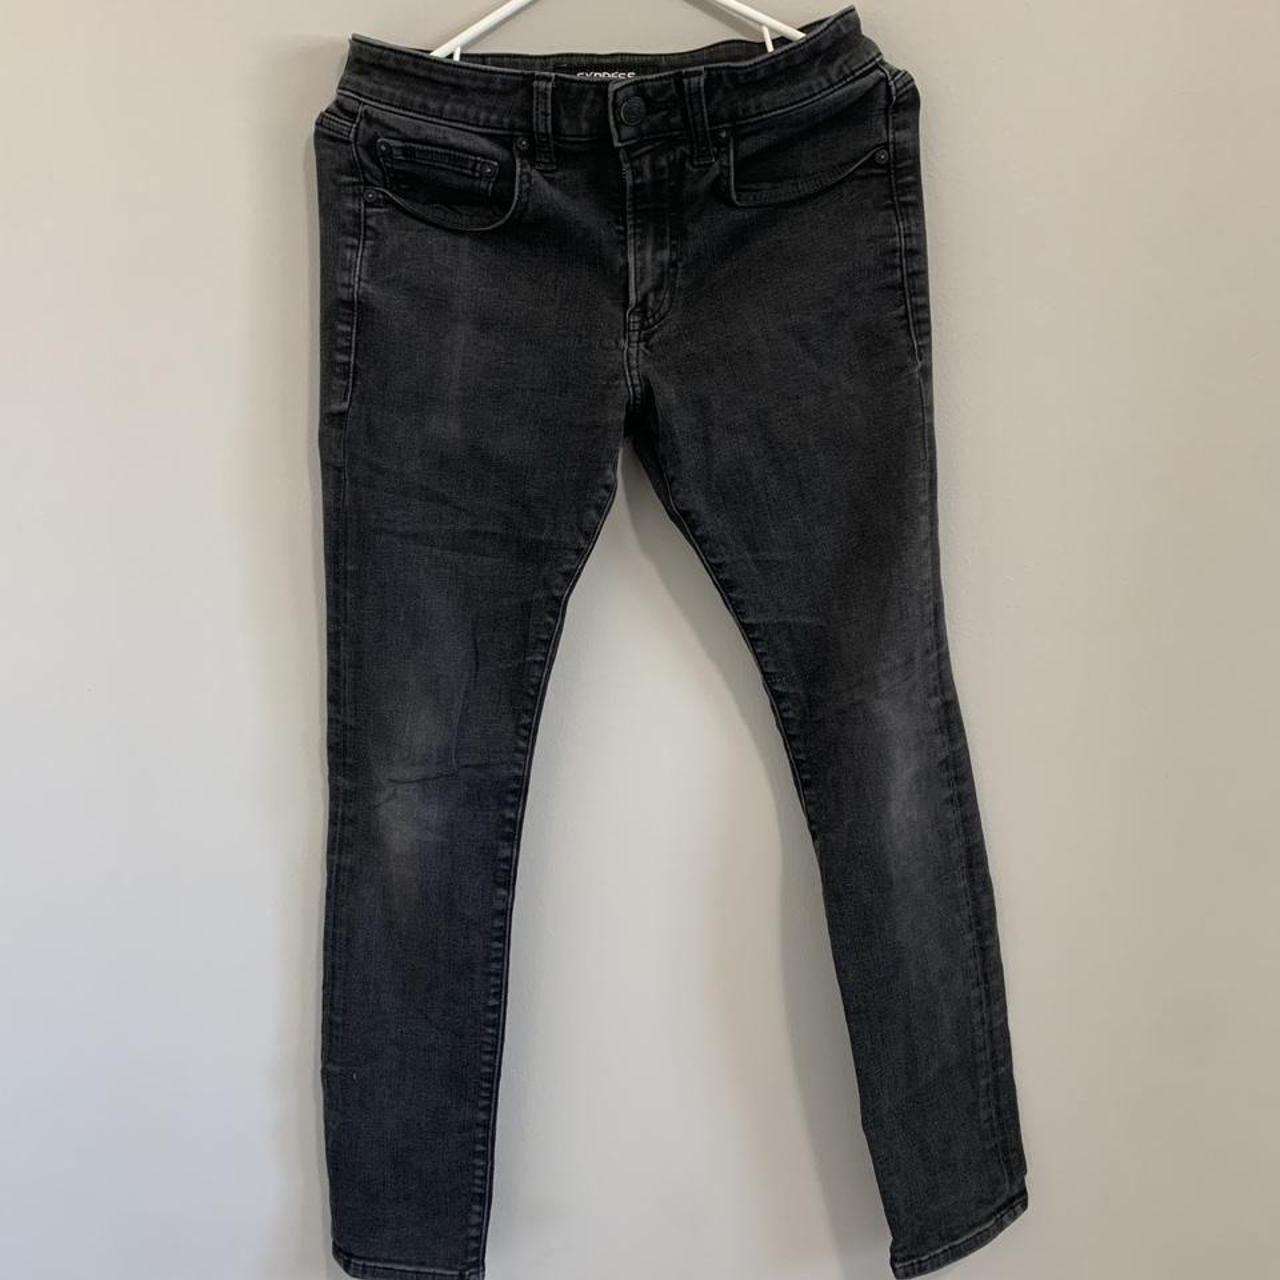 Distressed Express Black Slim-Fit Jeans MEN Size:... - Depop